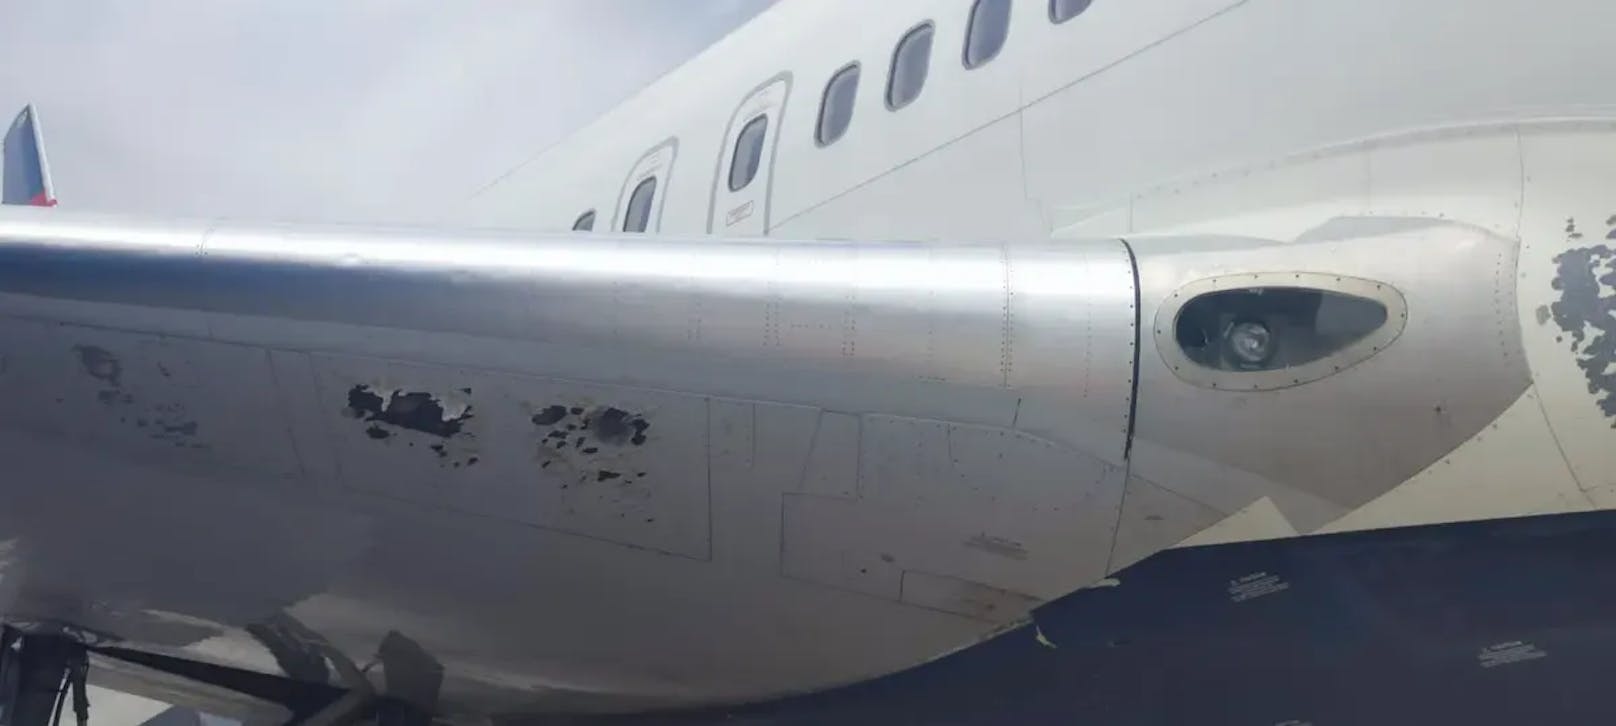 Das Flugzeug wurde mehrfach von Hagelkörnern getroffen, welche Einschlaglöcher im Flugzeug, einschließlich des Cockpits, verursachten.